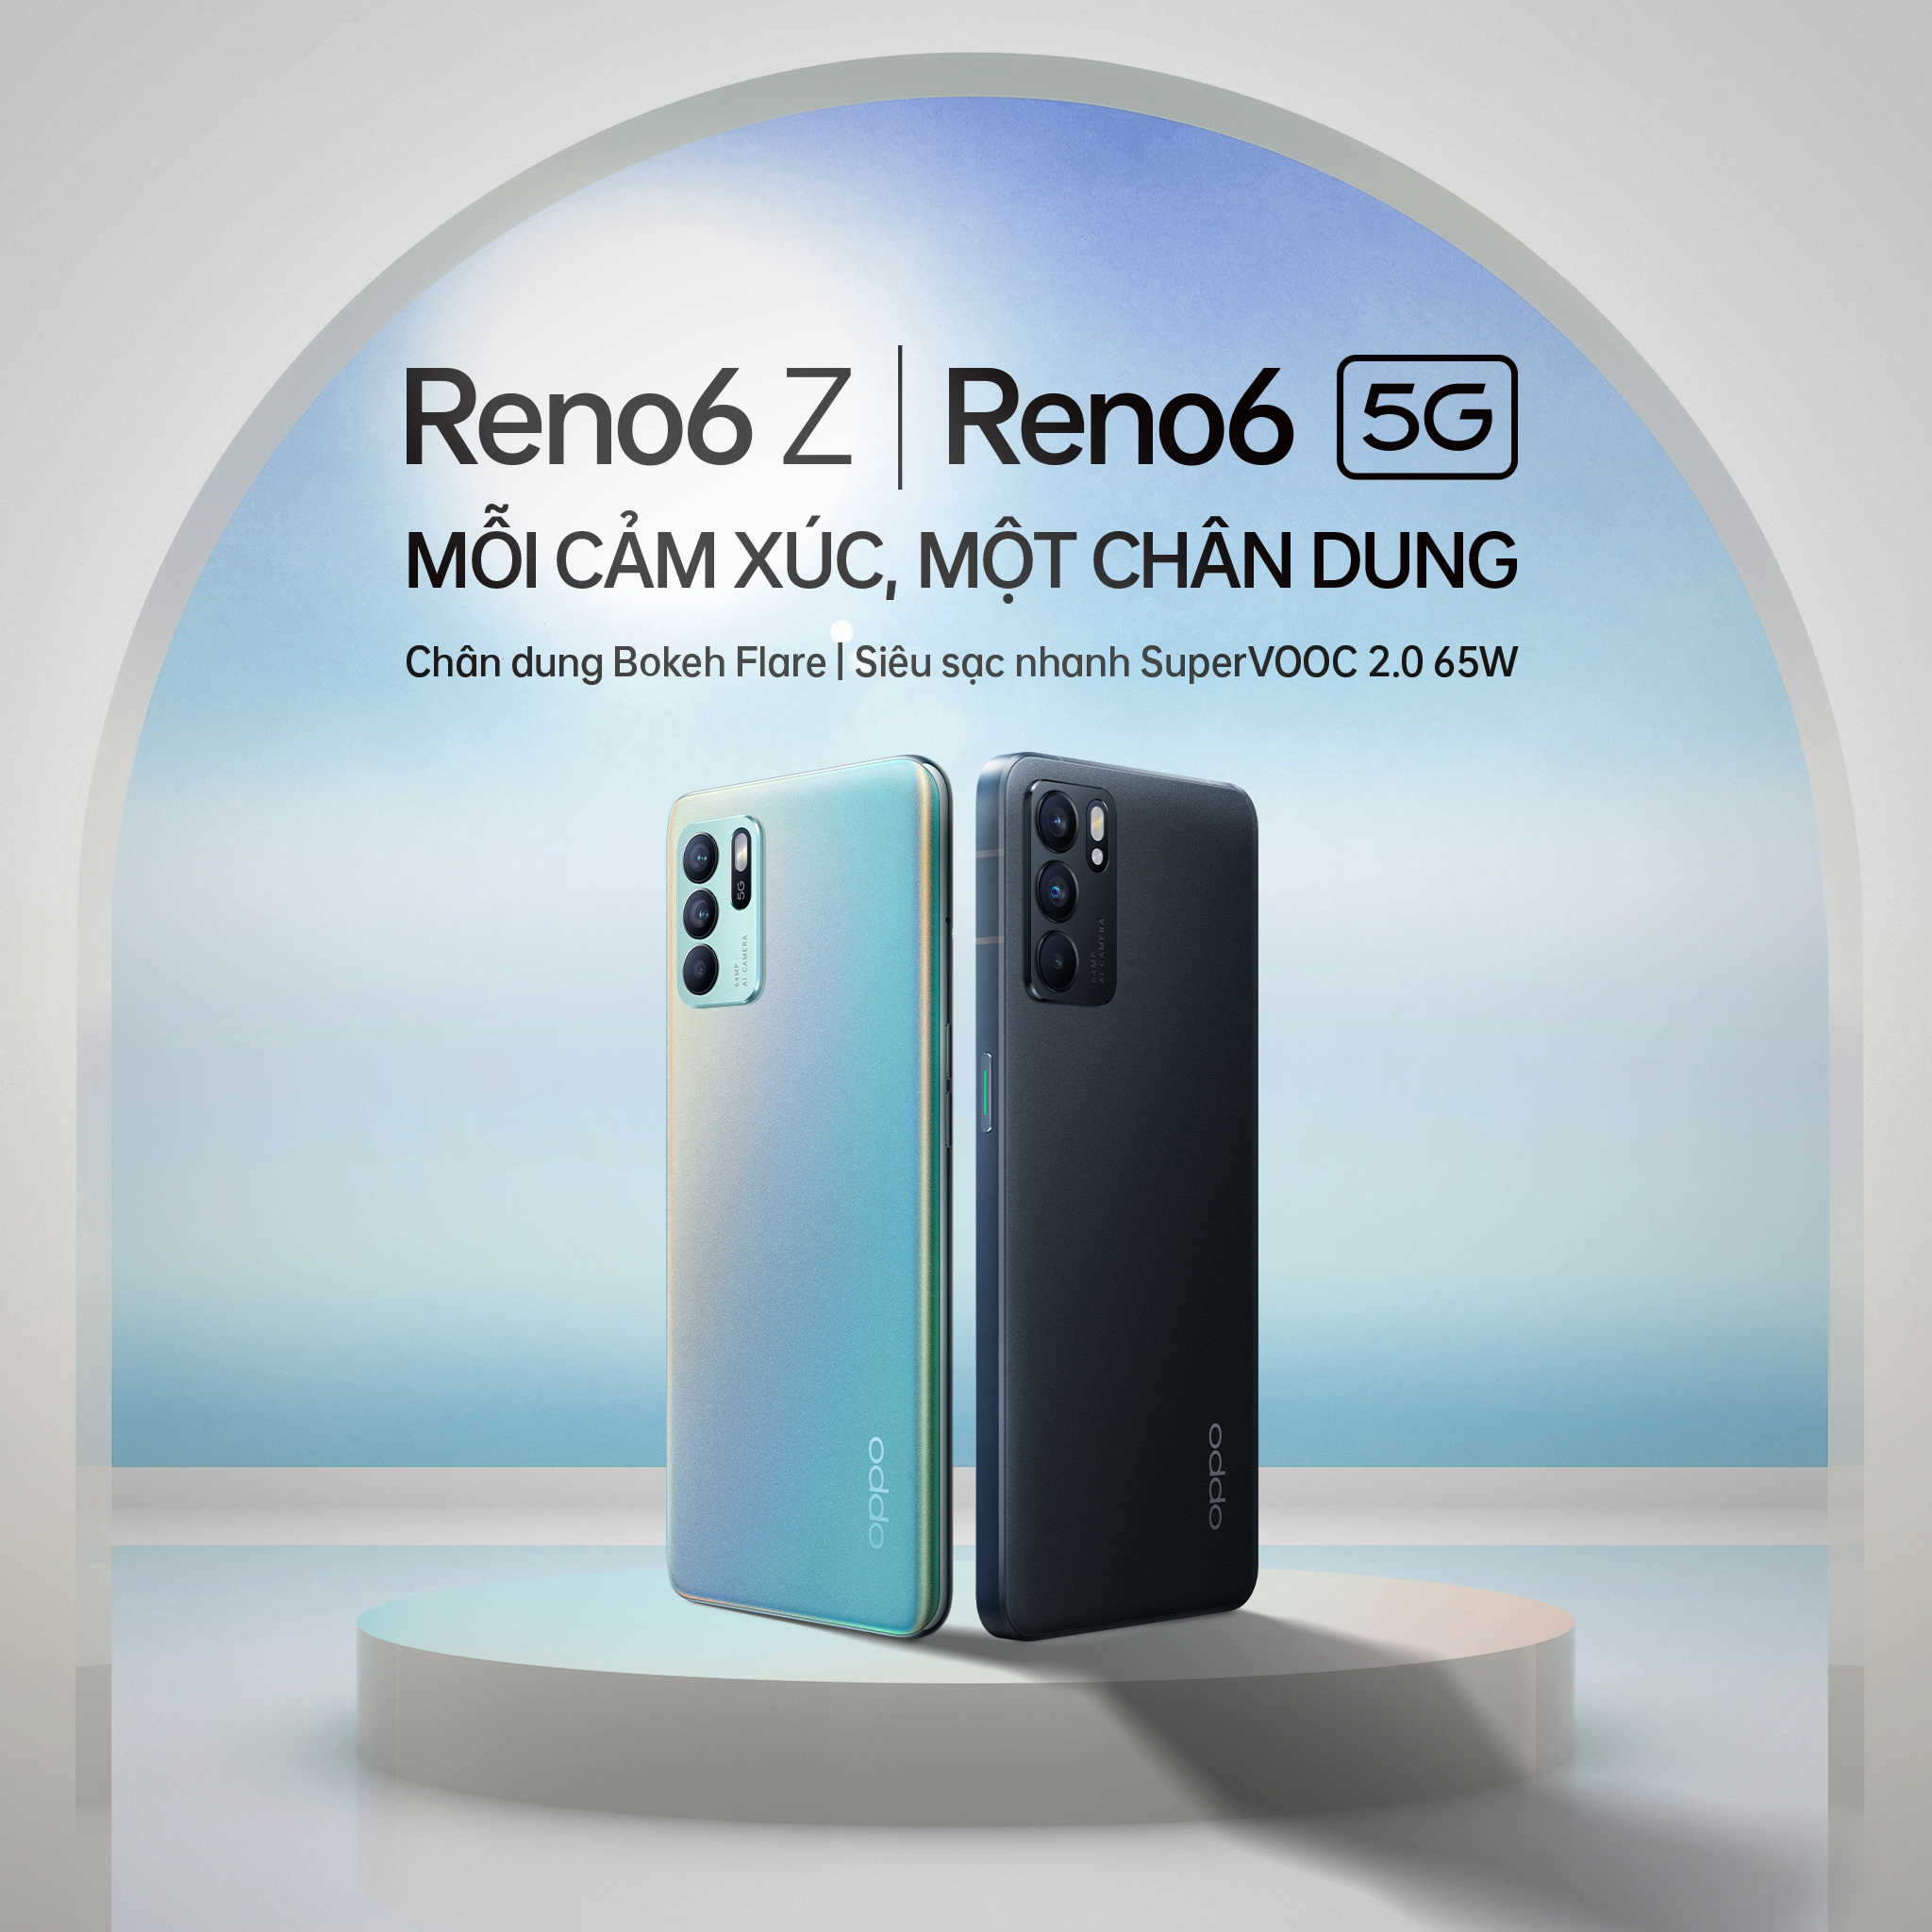 Chuyên gia công nghệ nói gì sau 1 tháng sử dụng OPPO Reno6 Series